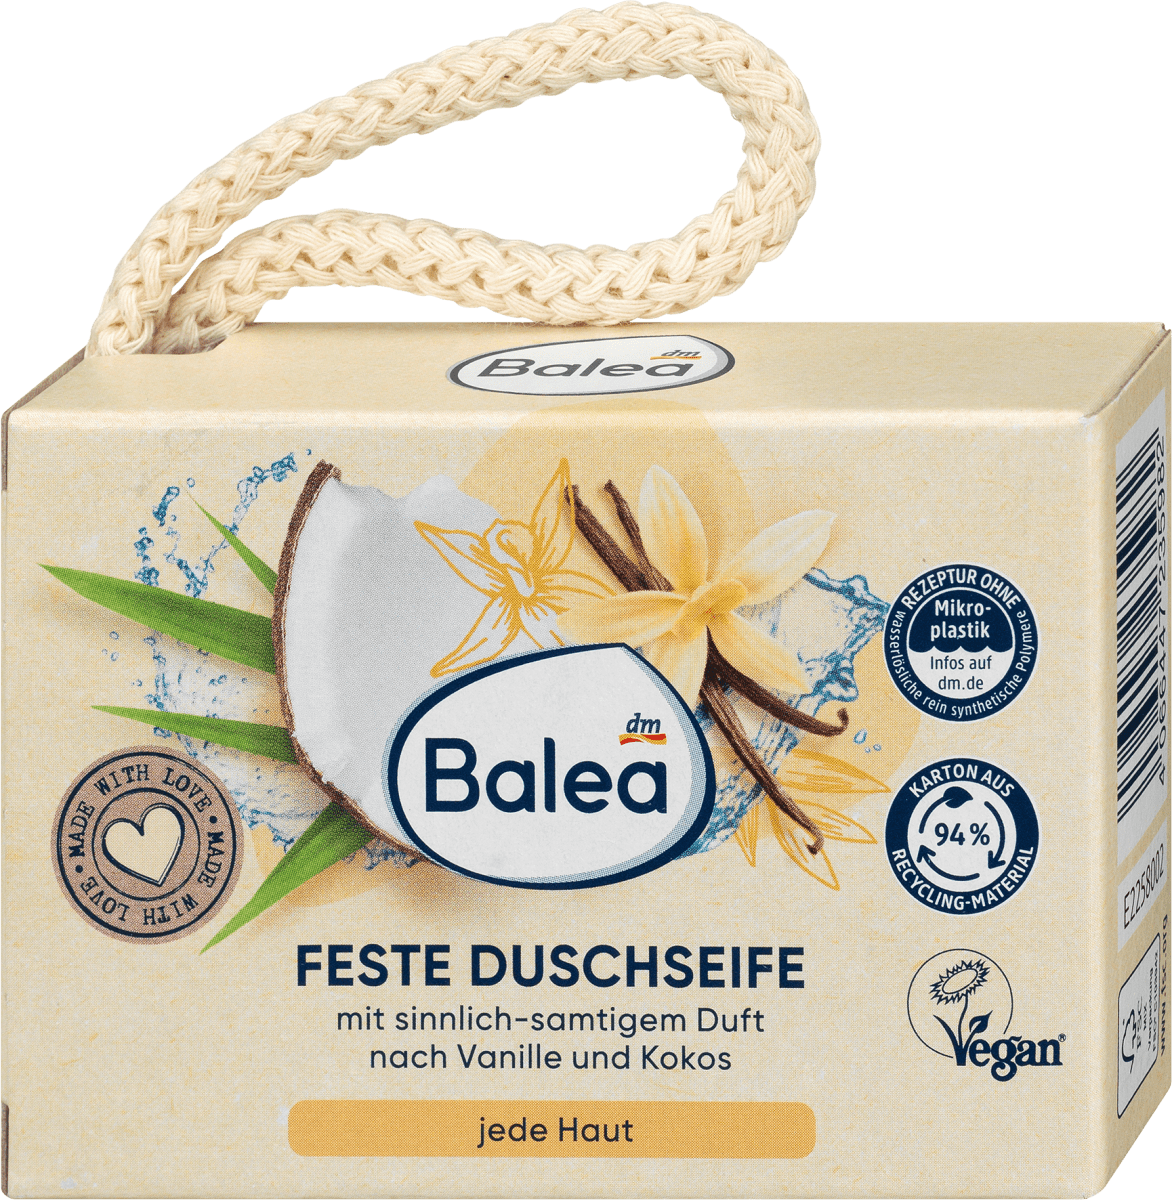 Balea Feste Duschseife Vanille & Kokos, 100 g dauerhaft günstig kaufen | dm.de